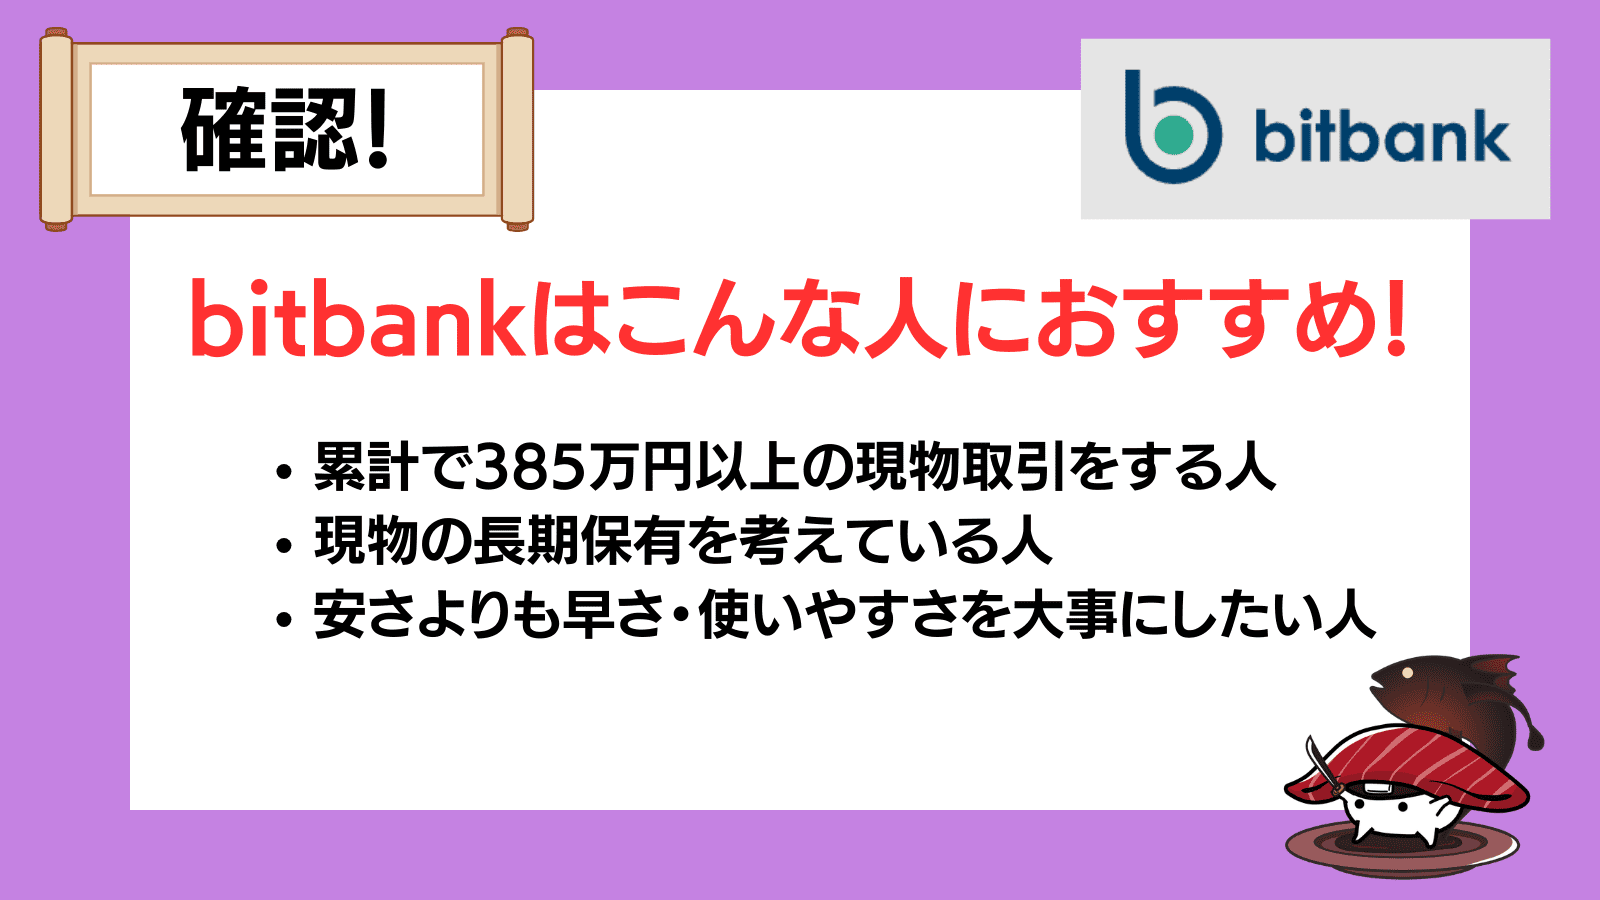 bitbank(ビットバンク)がおすすめな人